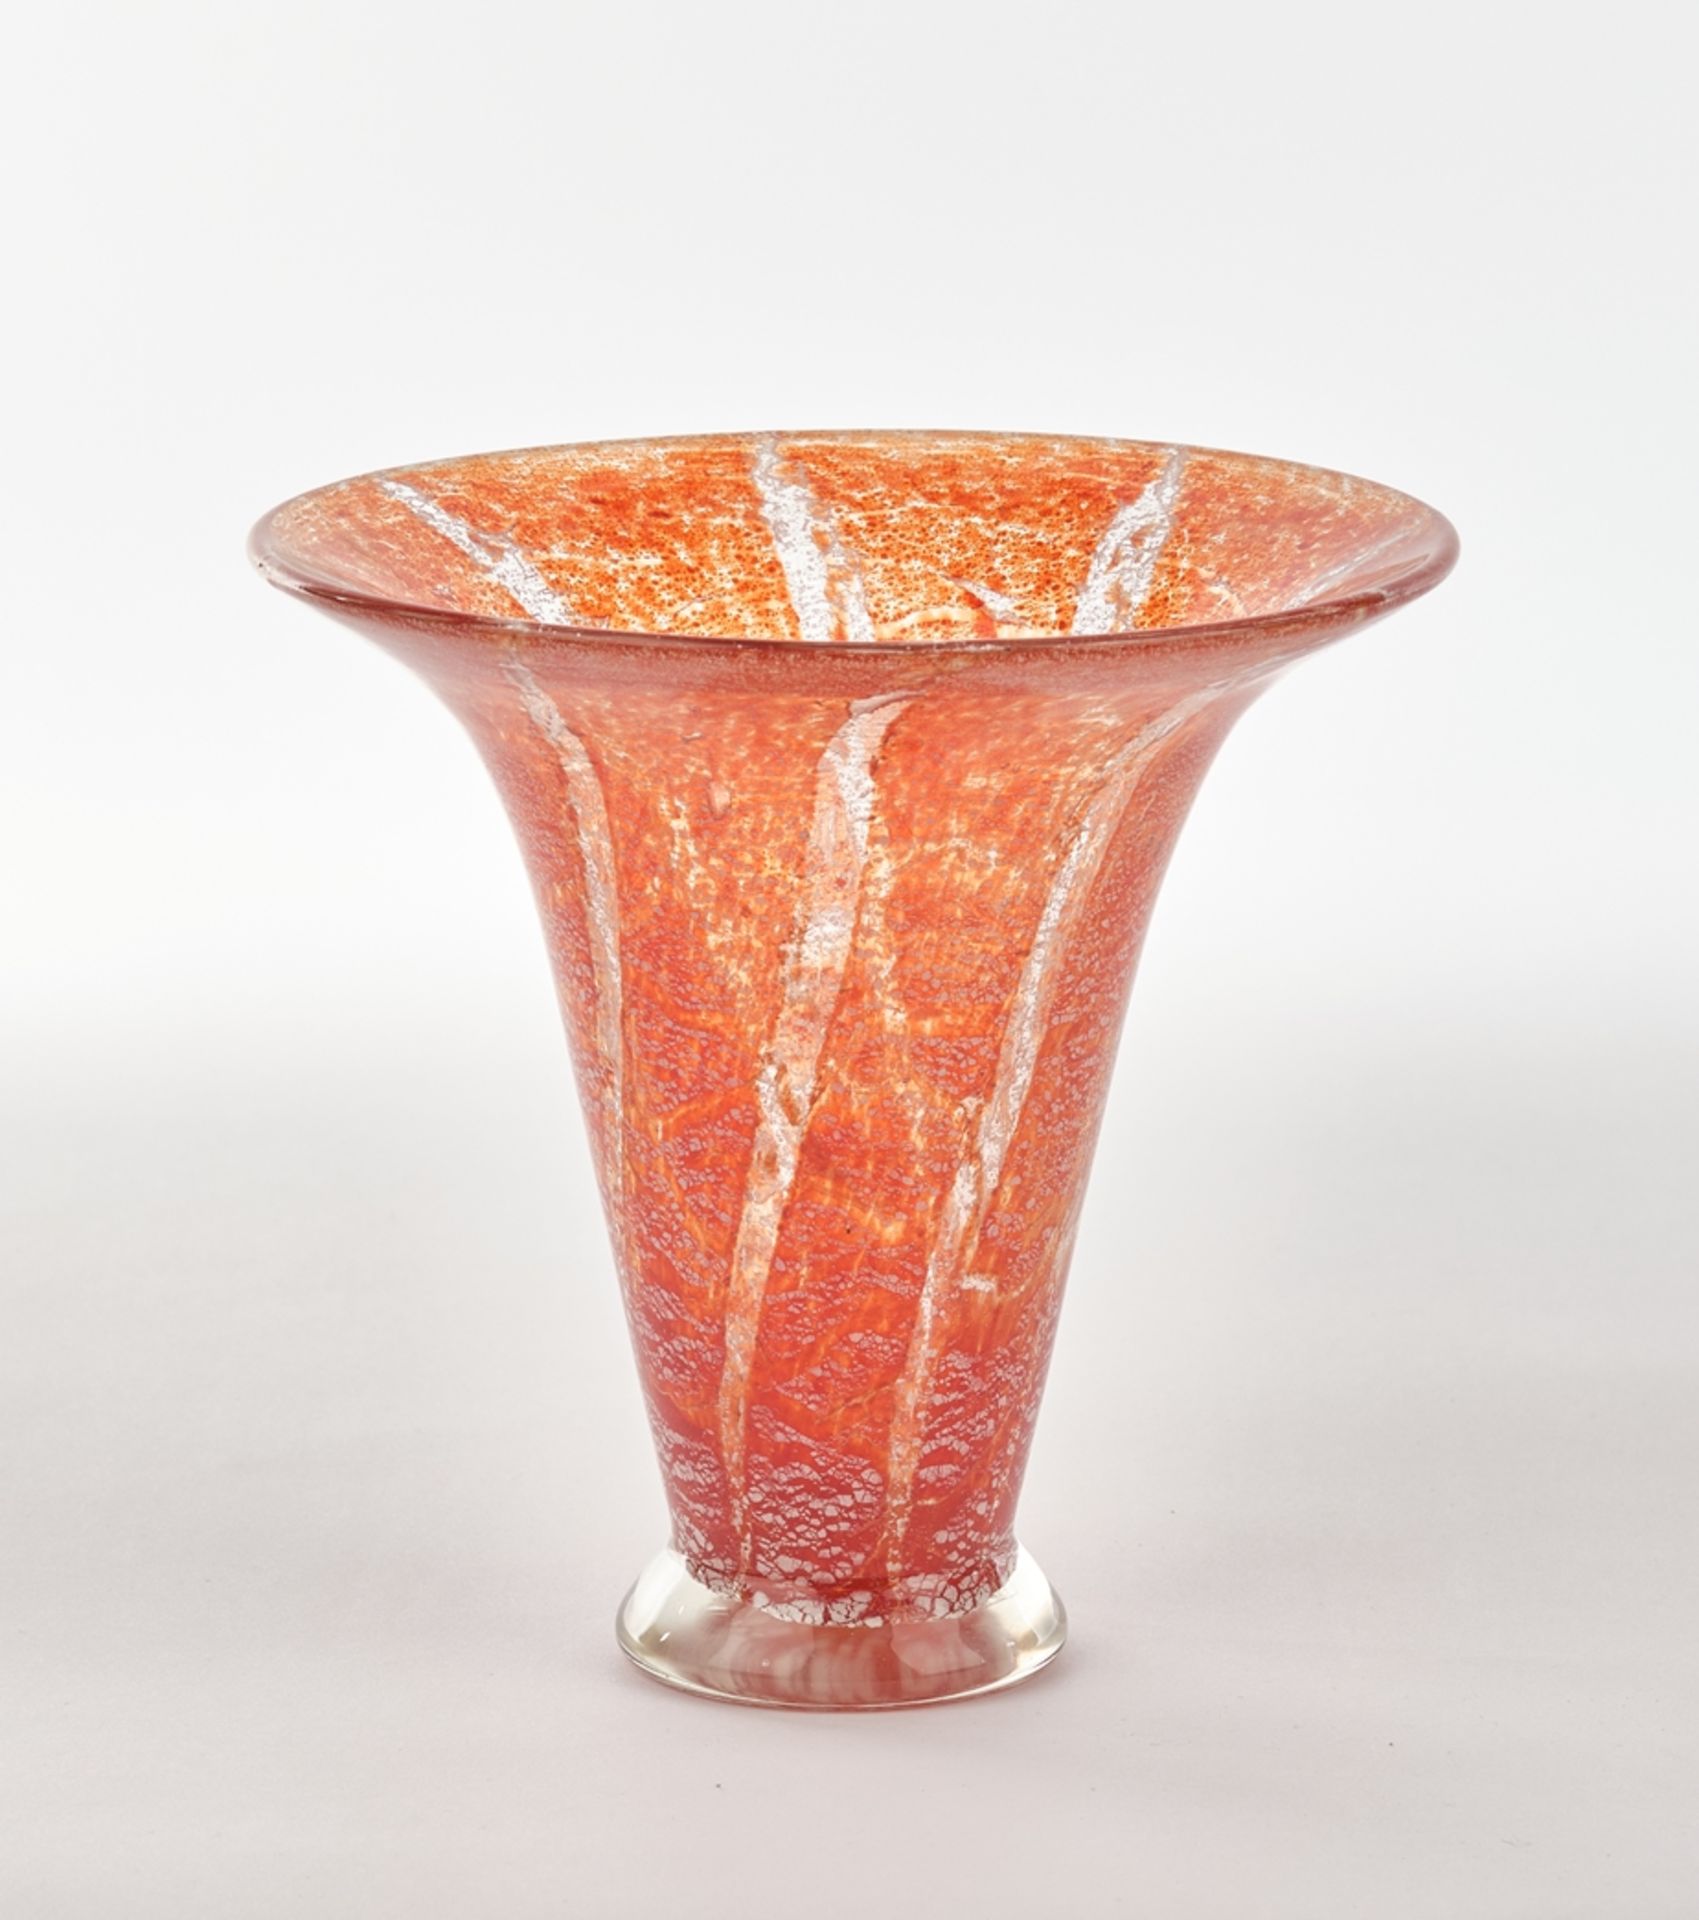 Vase, Ende 20. Jh., Glas, farblos, umlaufend gedrehter Streifendekor mit orange-roten und weißen Ei